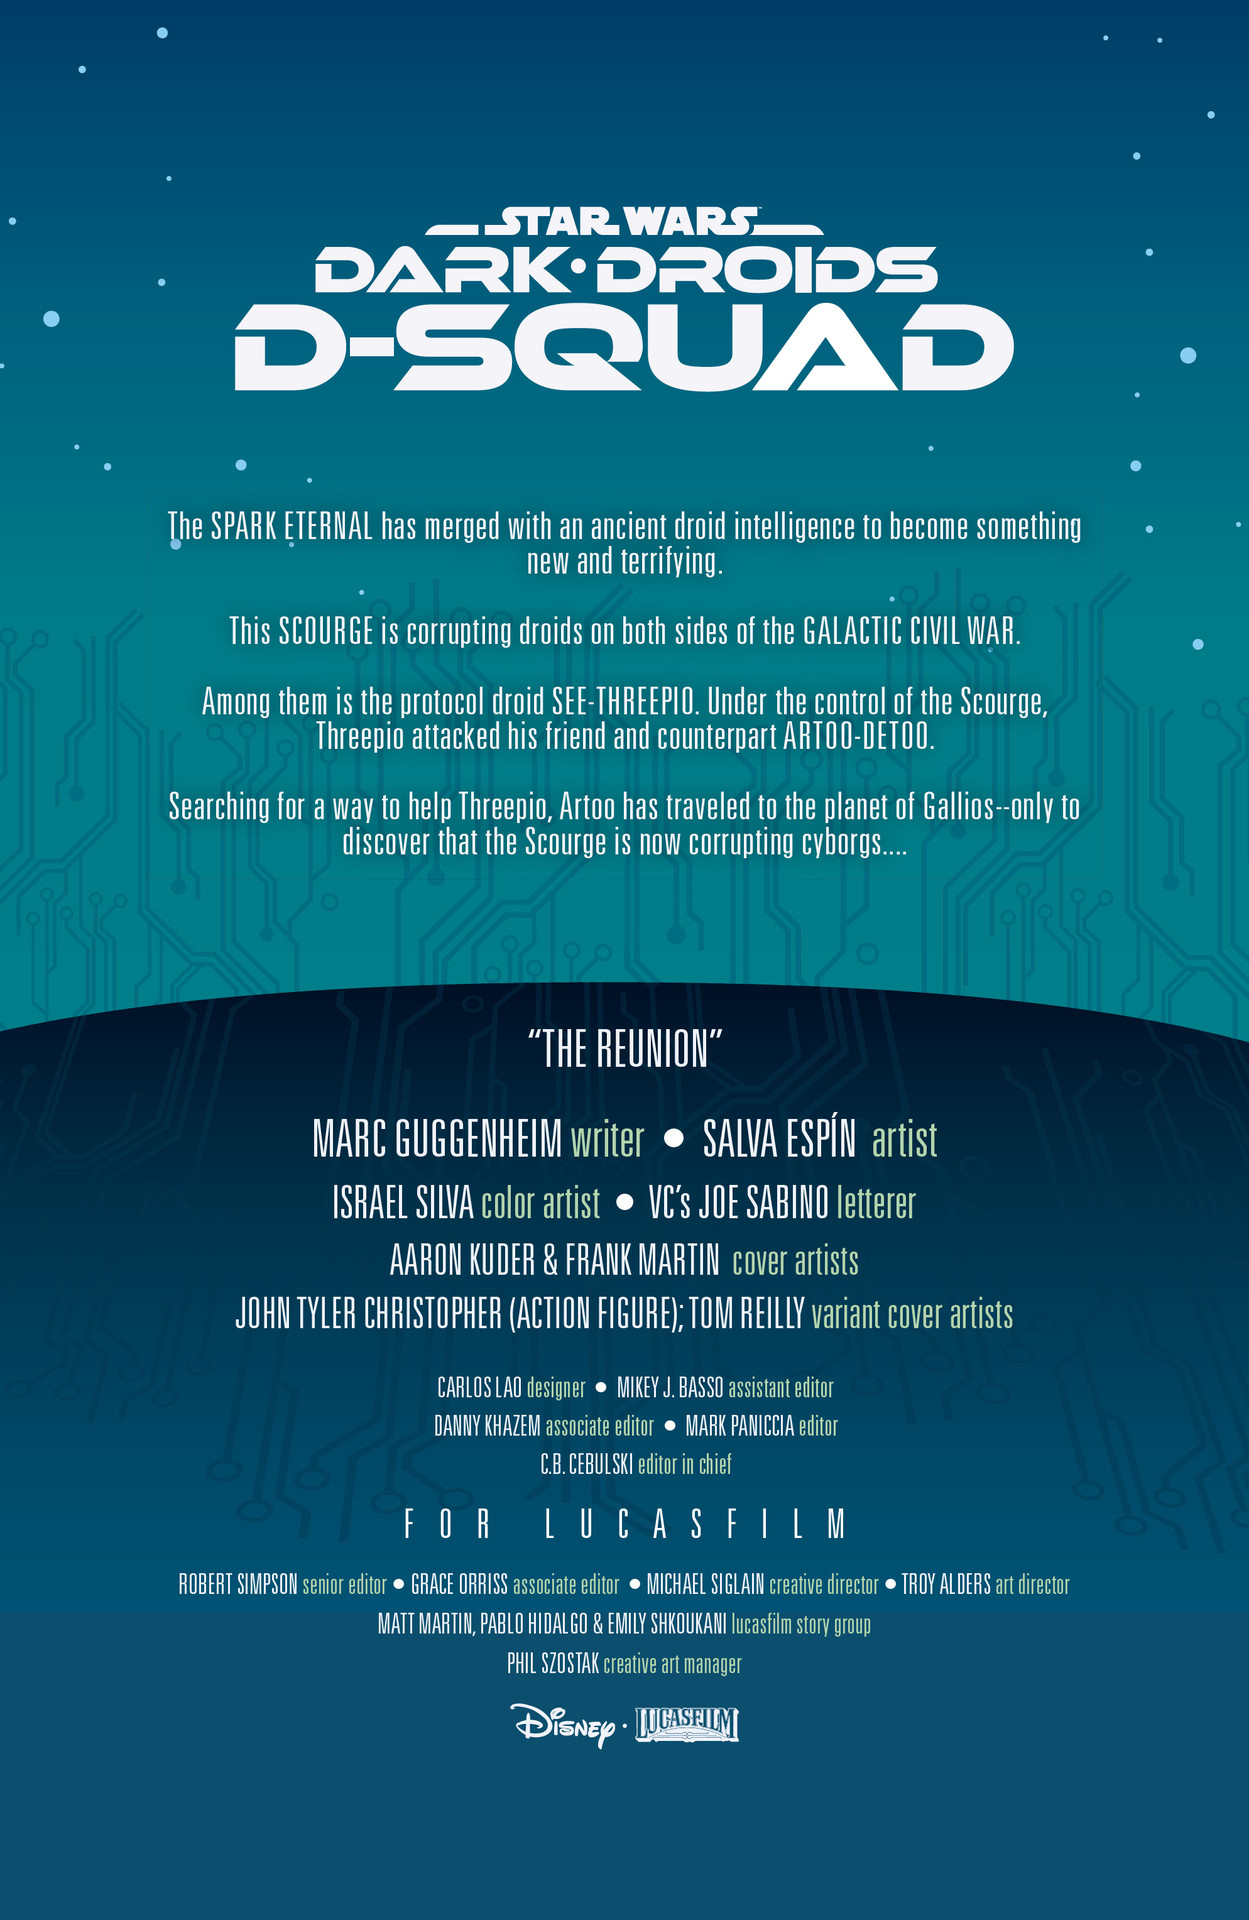 Read online Star Wars: Dark Droids - D-Squad comic -  Issue #3 - 2